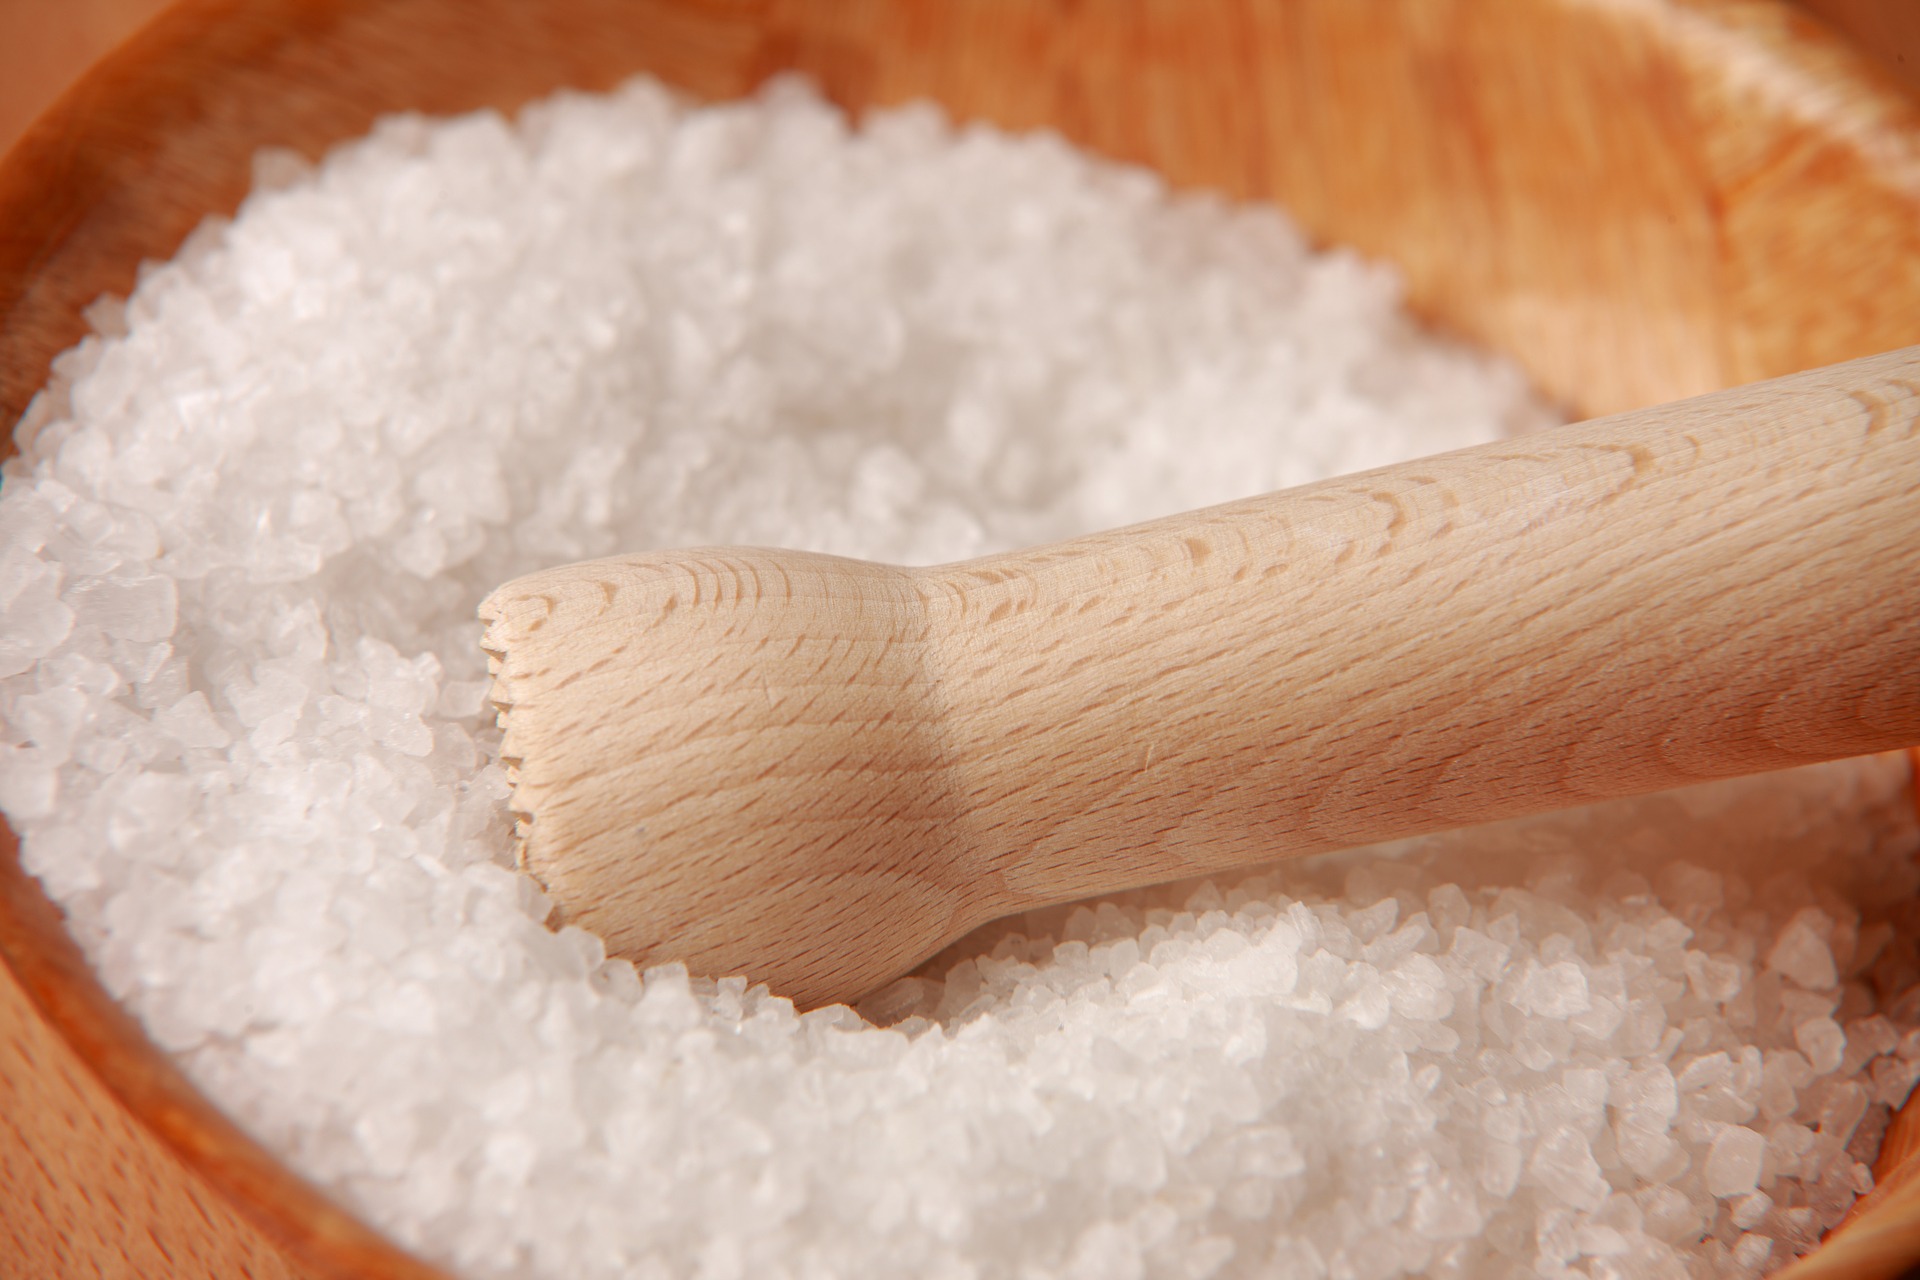 La sal es un elemento purificador que evita que las almas se corrompan. (Foto: Pixabay)